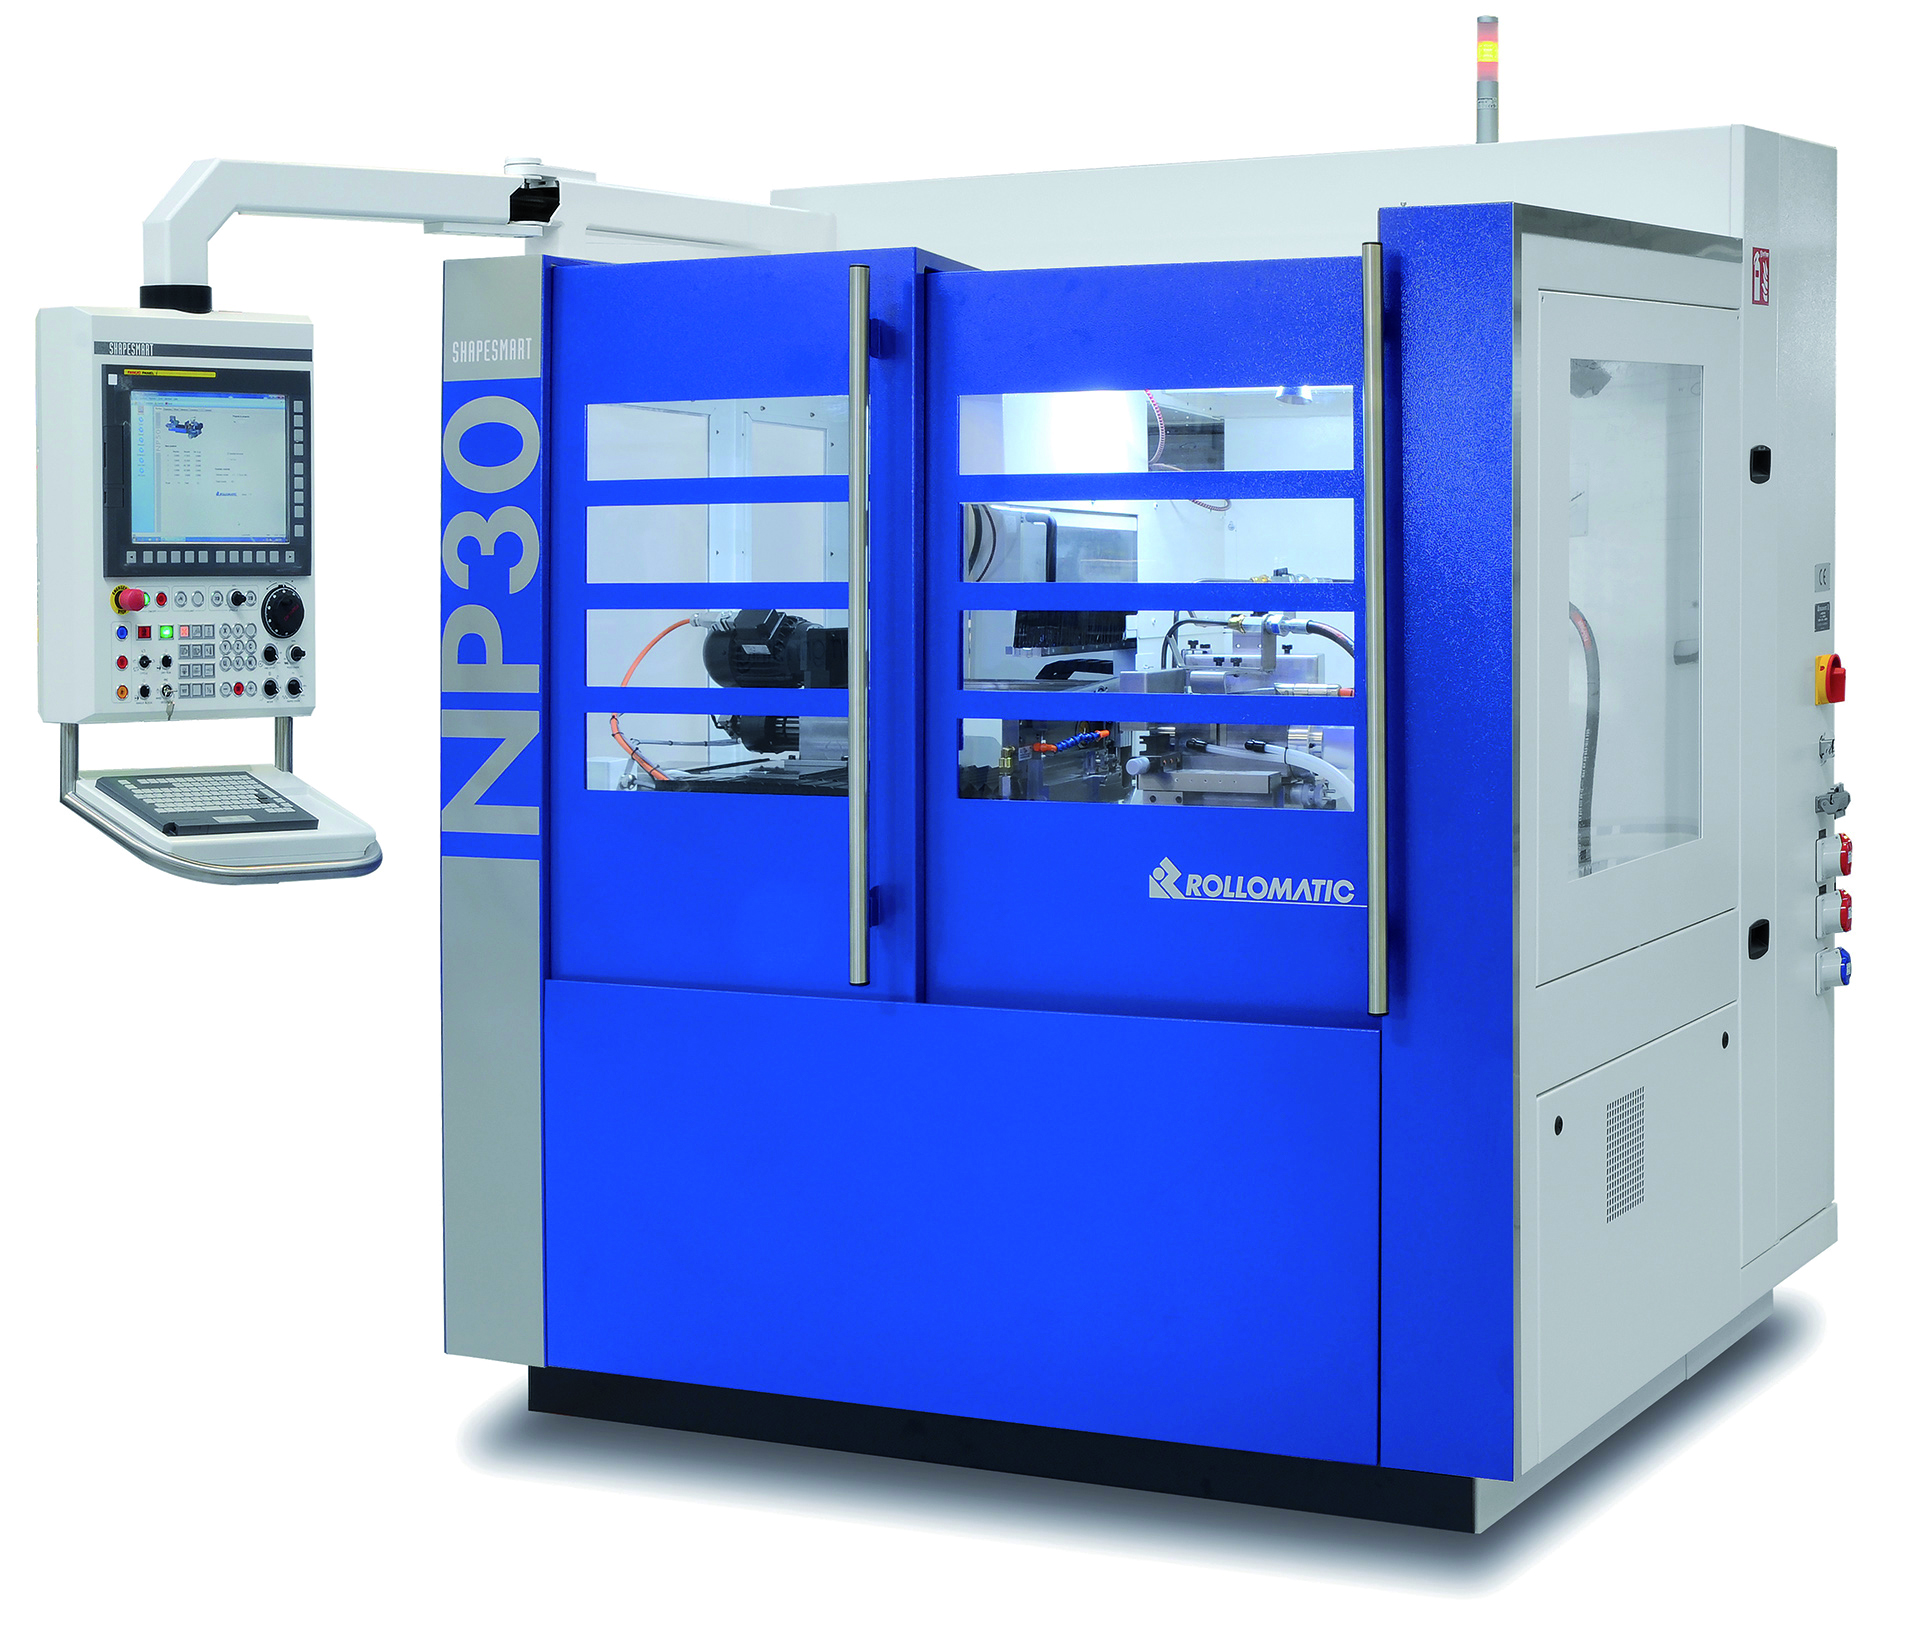 Rollomatic präsentiert neue Schälschleifmaschine NP30 Noch mehr Flexibilität und Leistung bei der Rohlingsbearbeitung Die ideale Ausführung für zylindrische Anwendungen